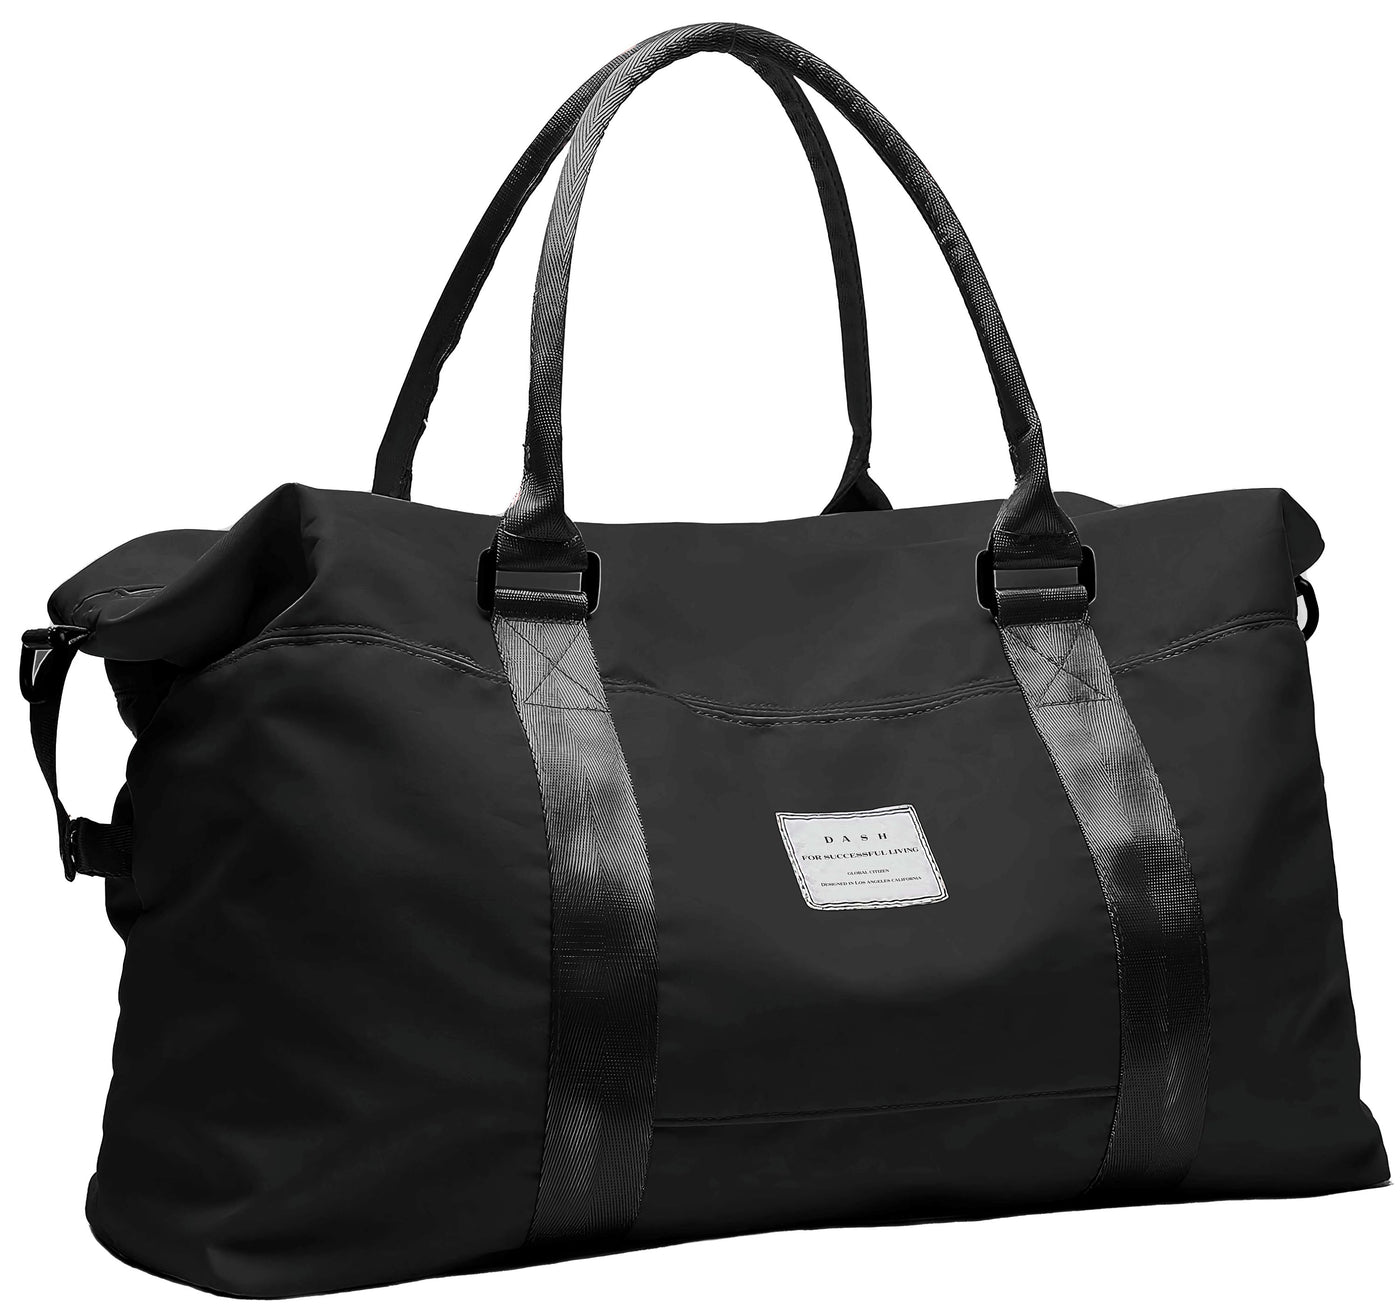 Travel Duffel Bag - Black